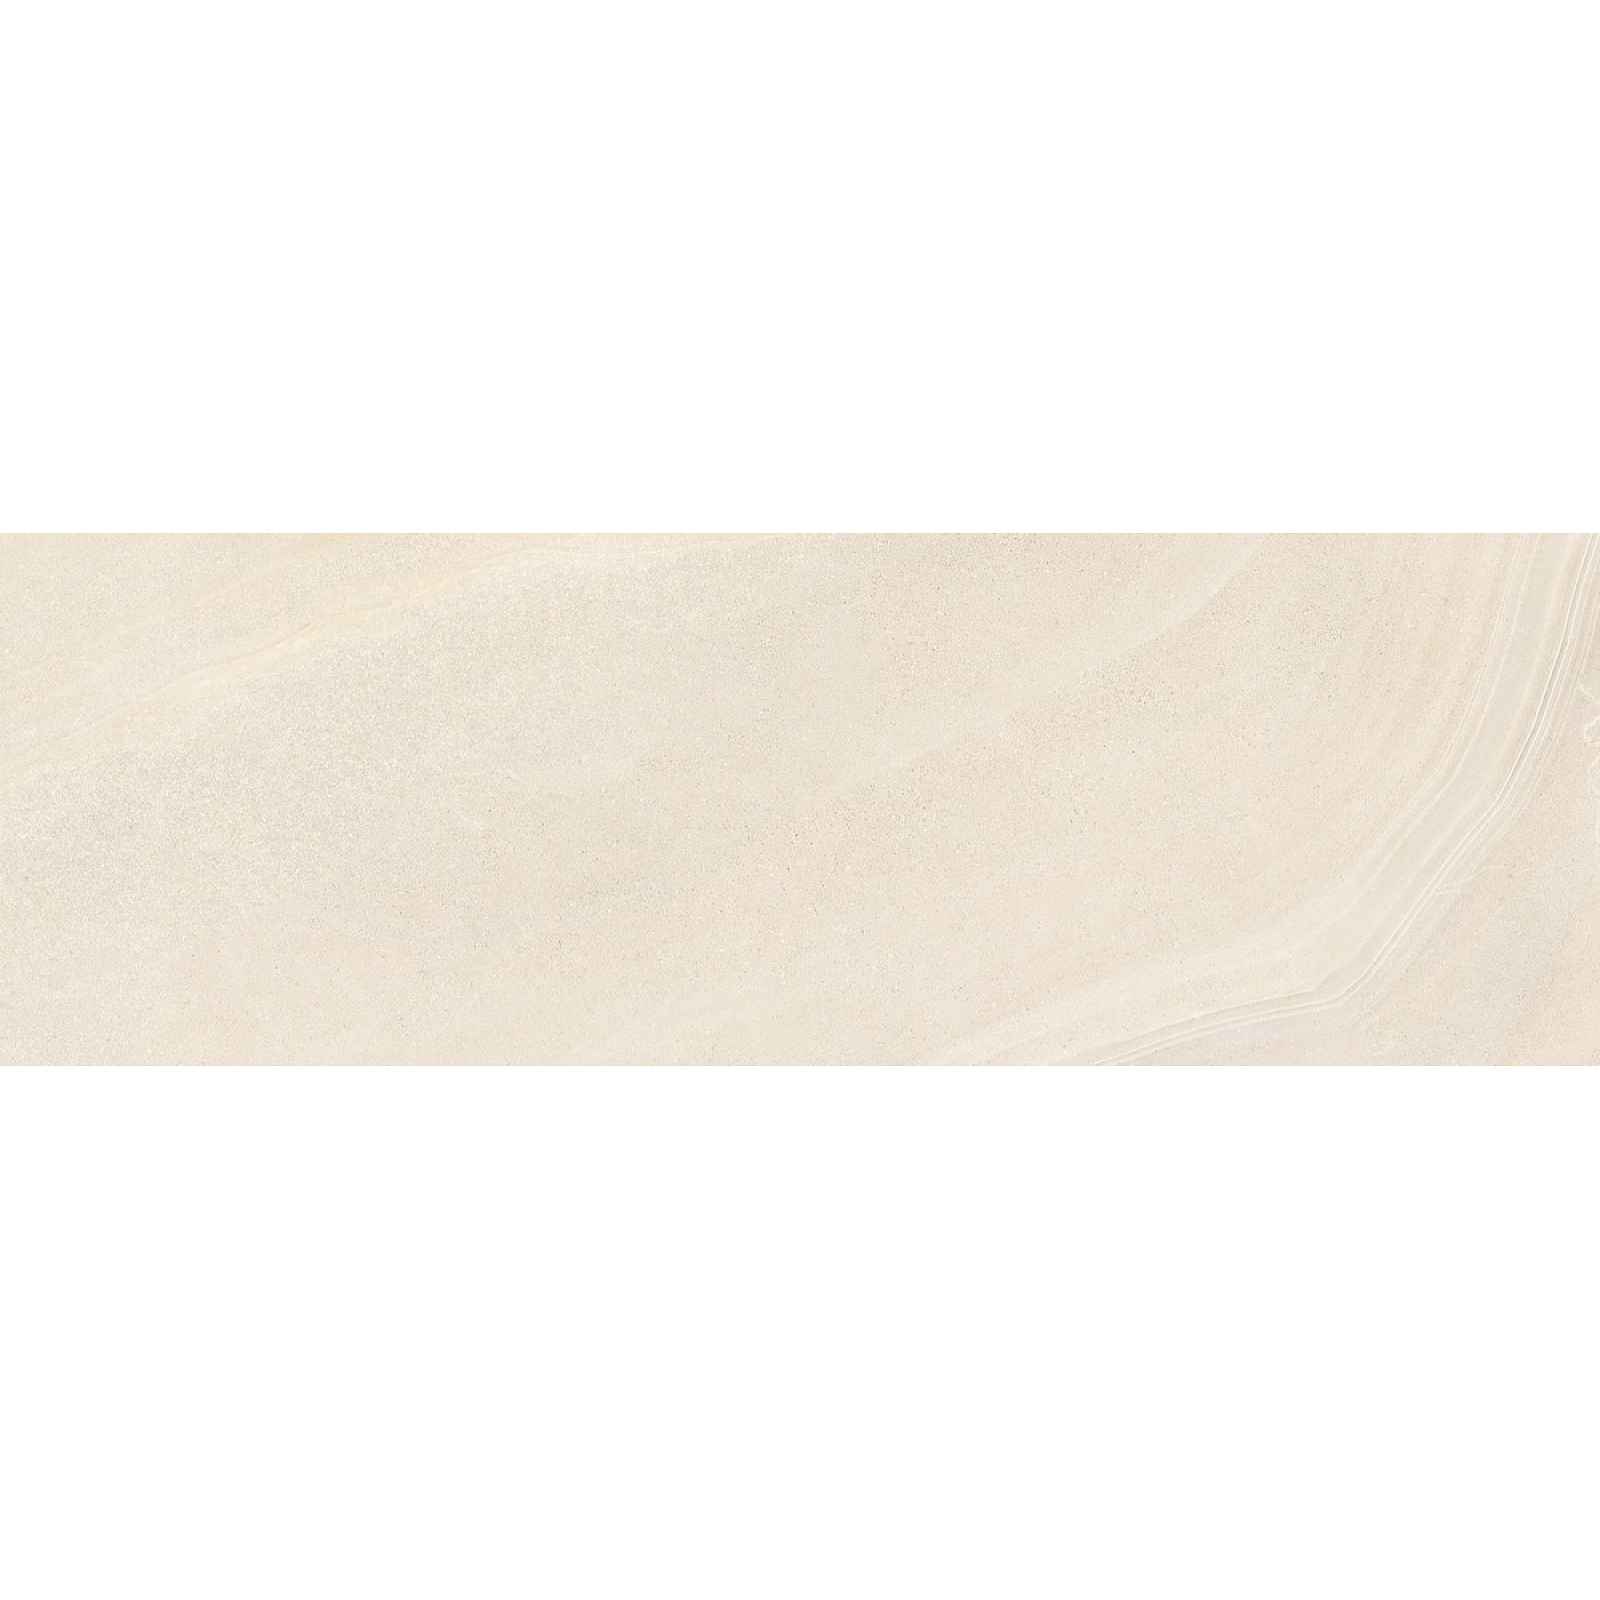 Obklad Ceramika Color River sand 25x75 cm lesk RIVER